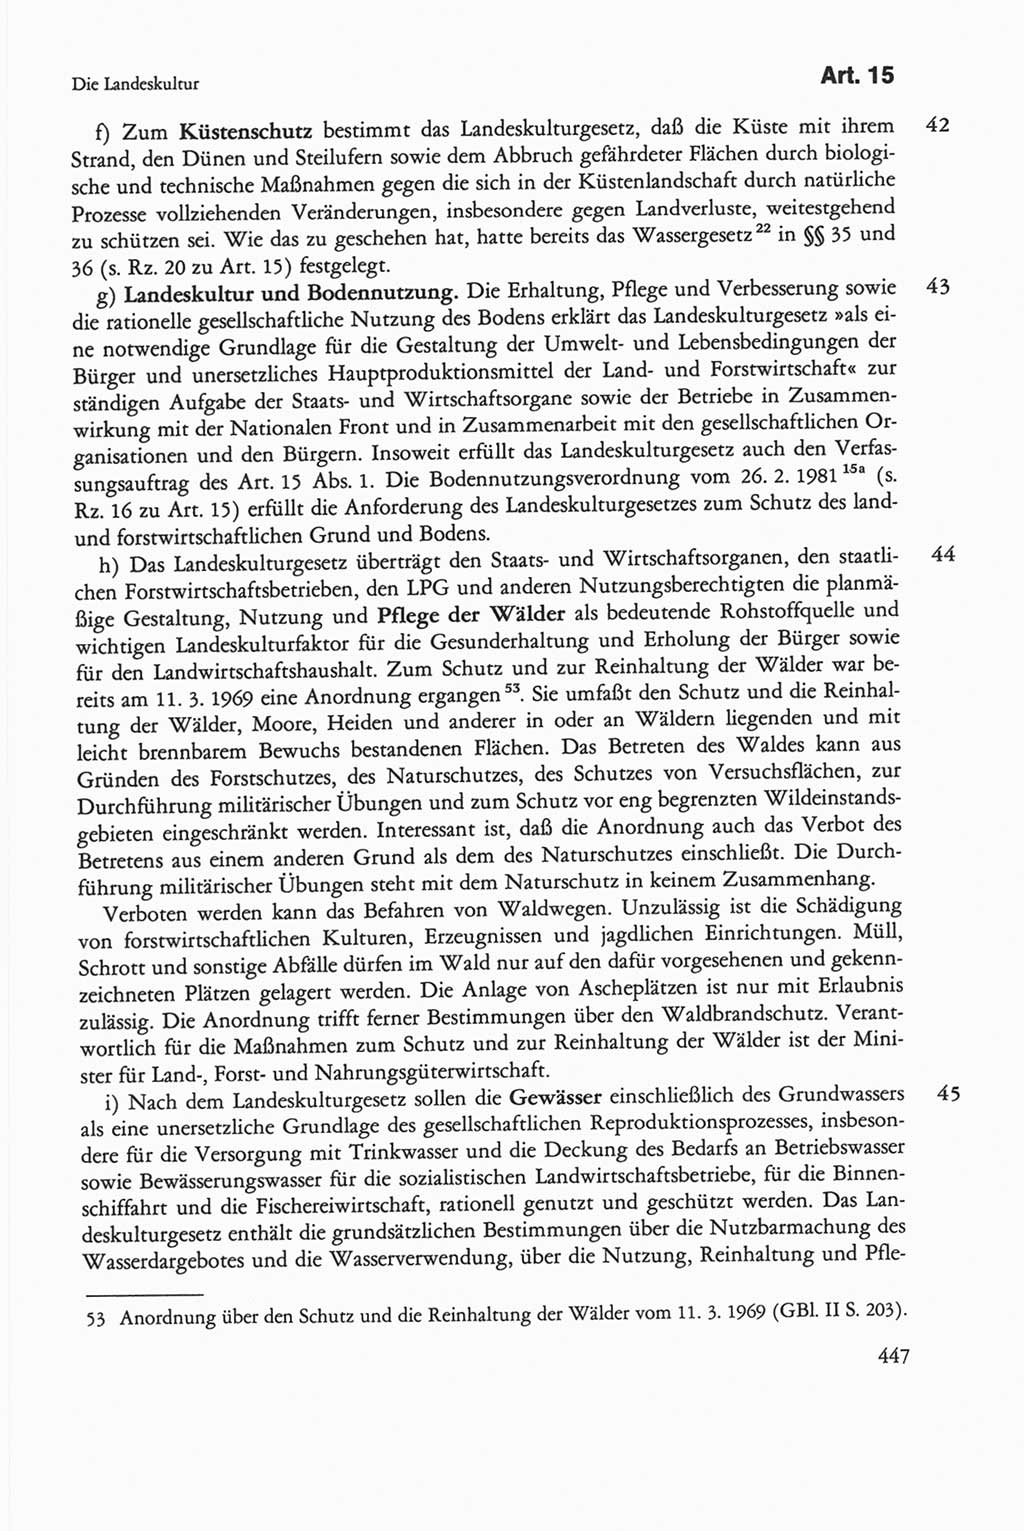 Die sozialistische Verfassung der Deutschen Demokratischen Republik (DDR), Kommentar 1982, Seite 447 (Soz. Verf. DDR Komm. 1982, S. 447)